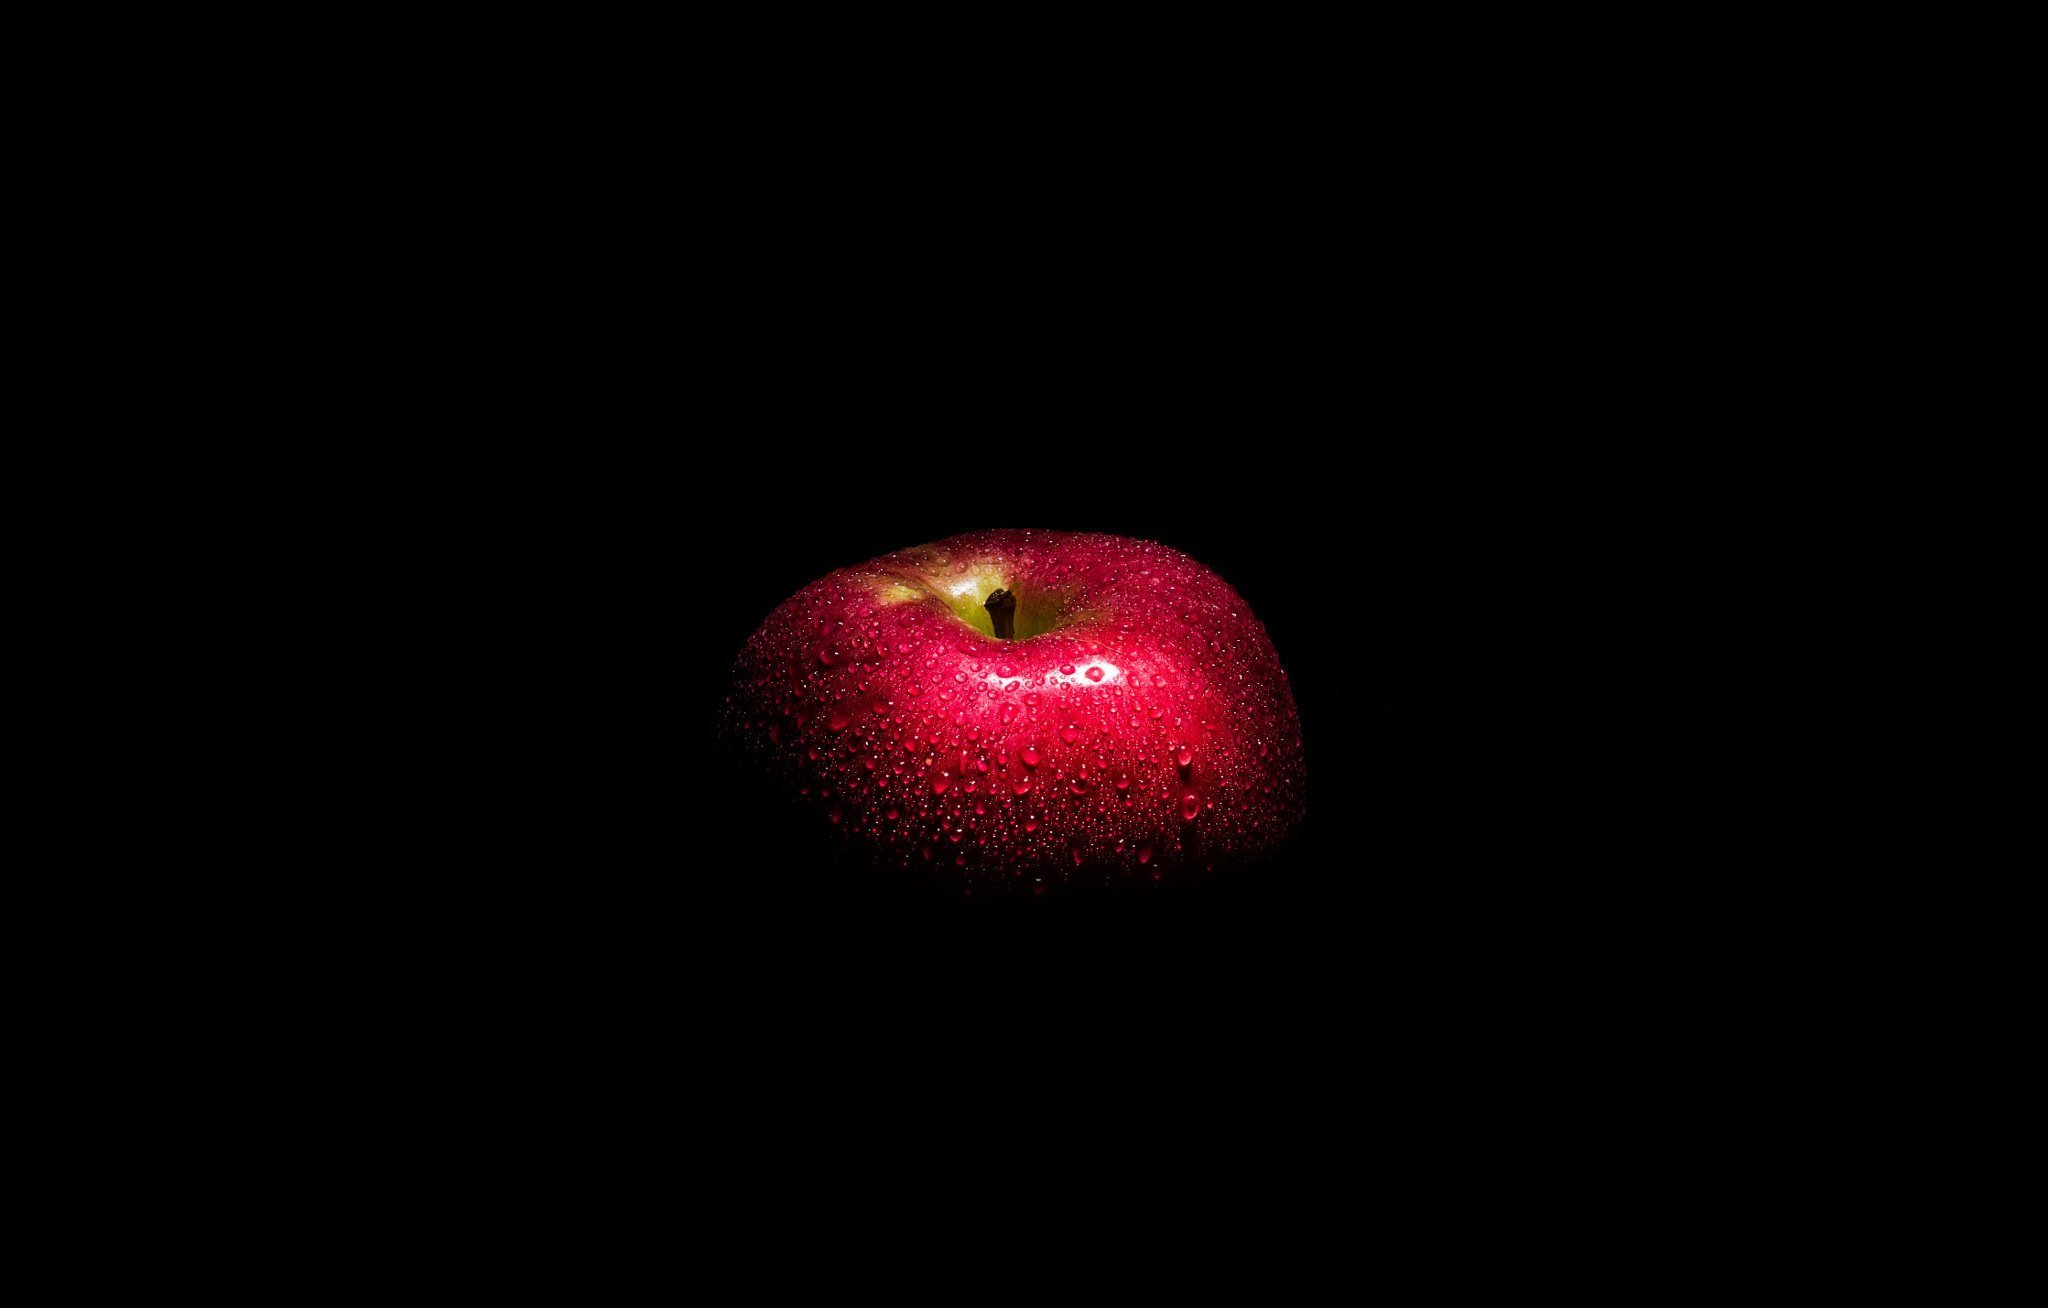 Яблоко на черном фоне. Яблоко на темном фоне. Красное яблоко на черном фоне. Я блолко на тёмноном фоне. Яблоки фон.